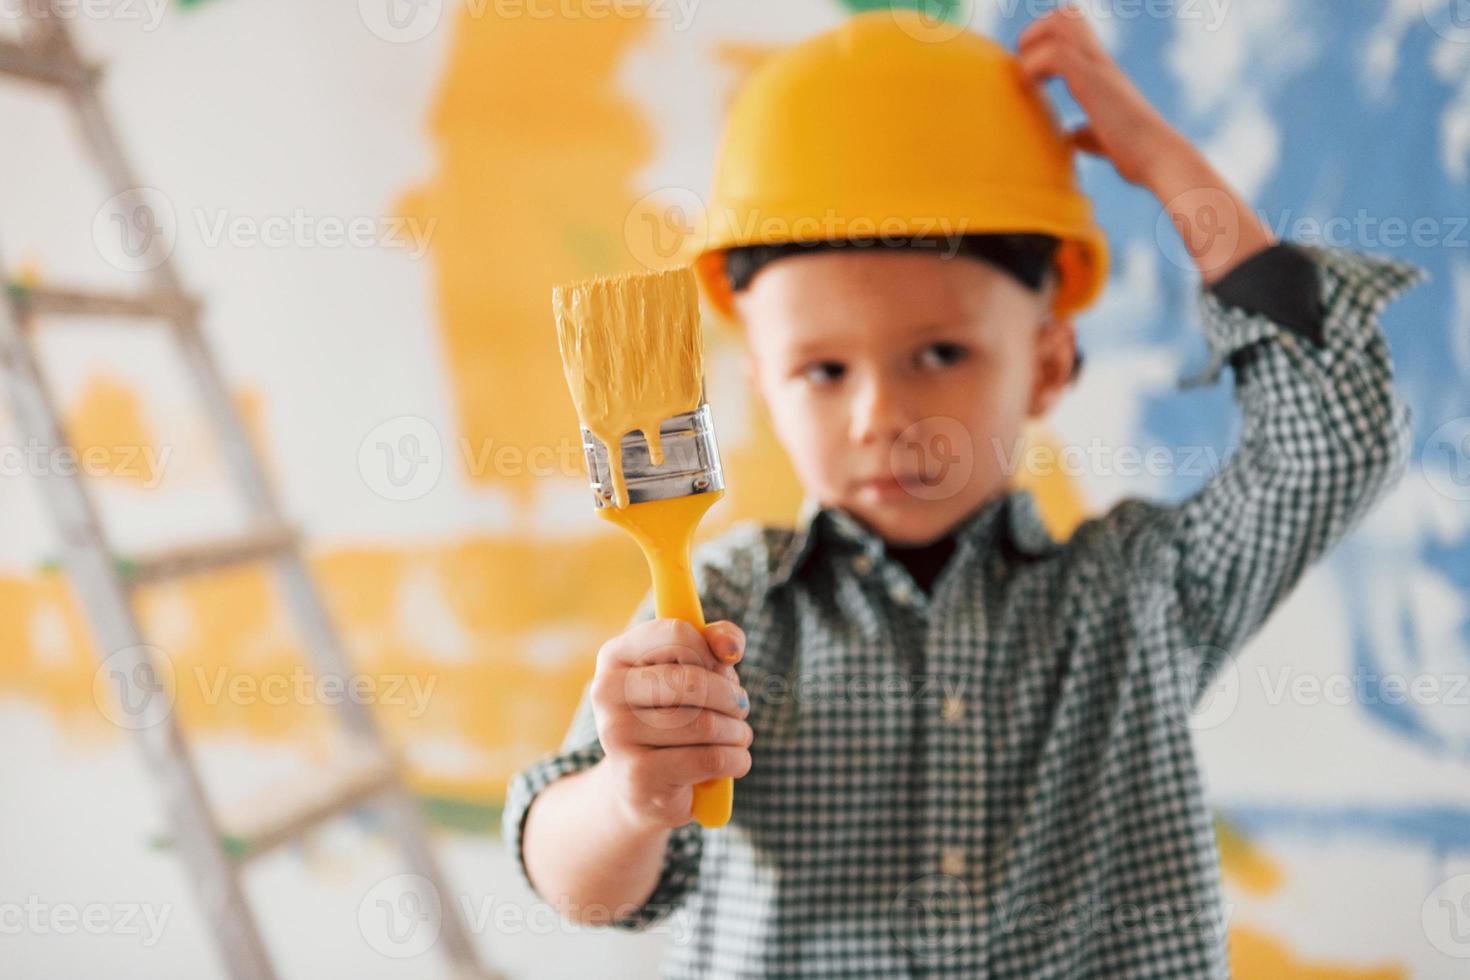 couleurs bleu et jaune derrière. conception de l'ukraine et de la paix. petit garçon peignant des murs dans la chambre domestique photo